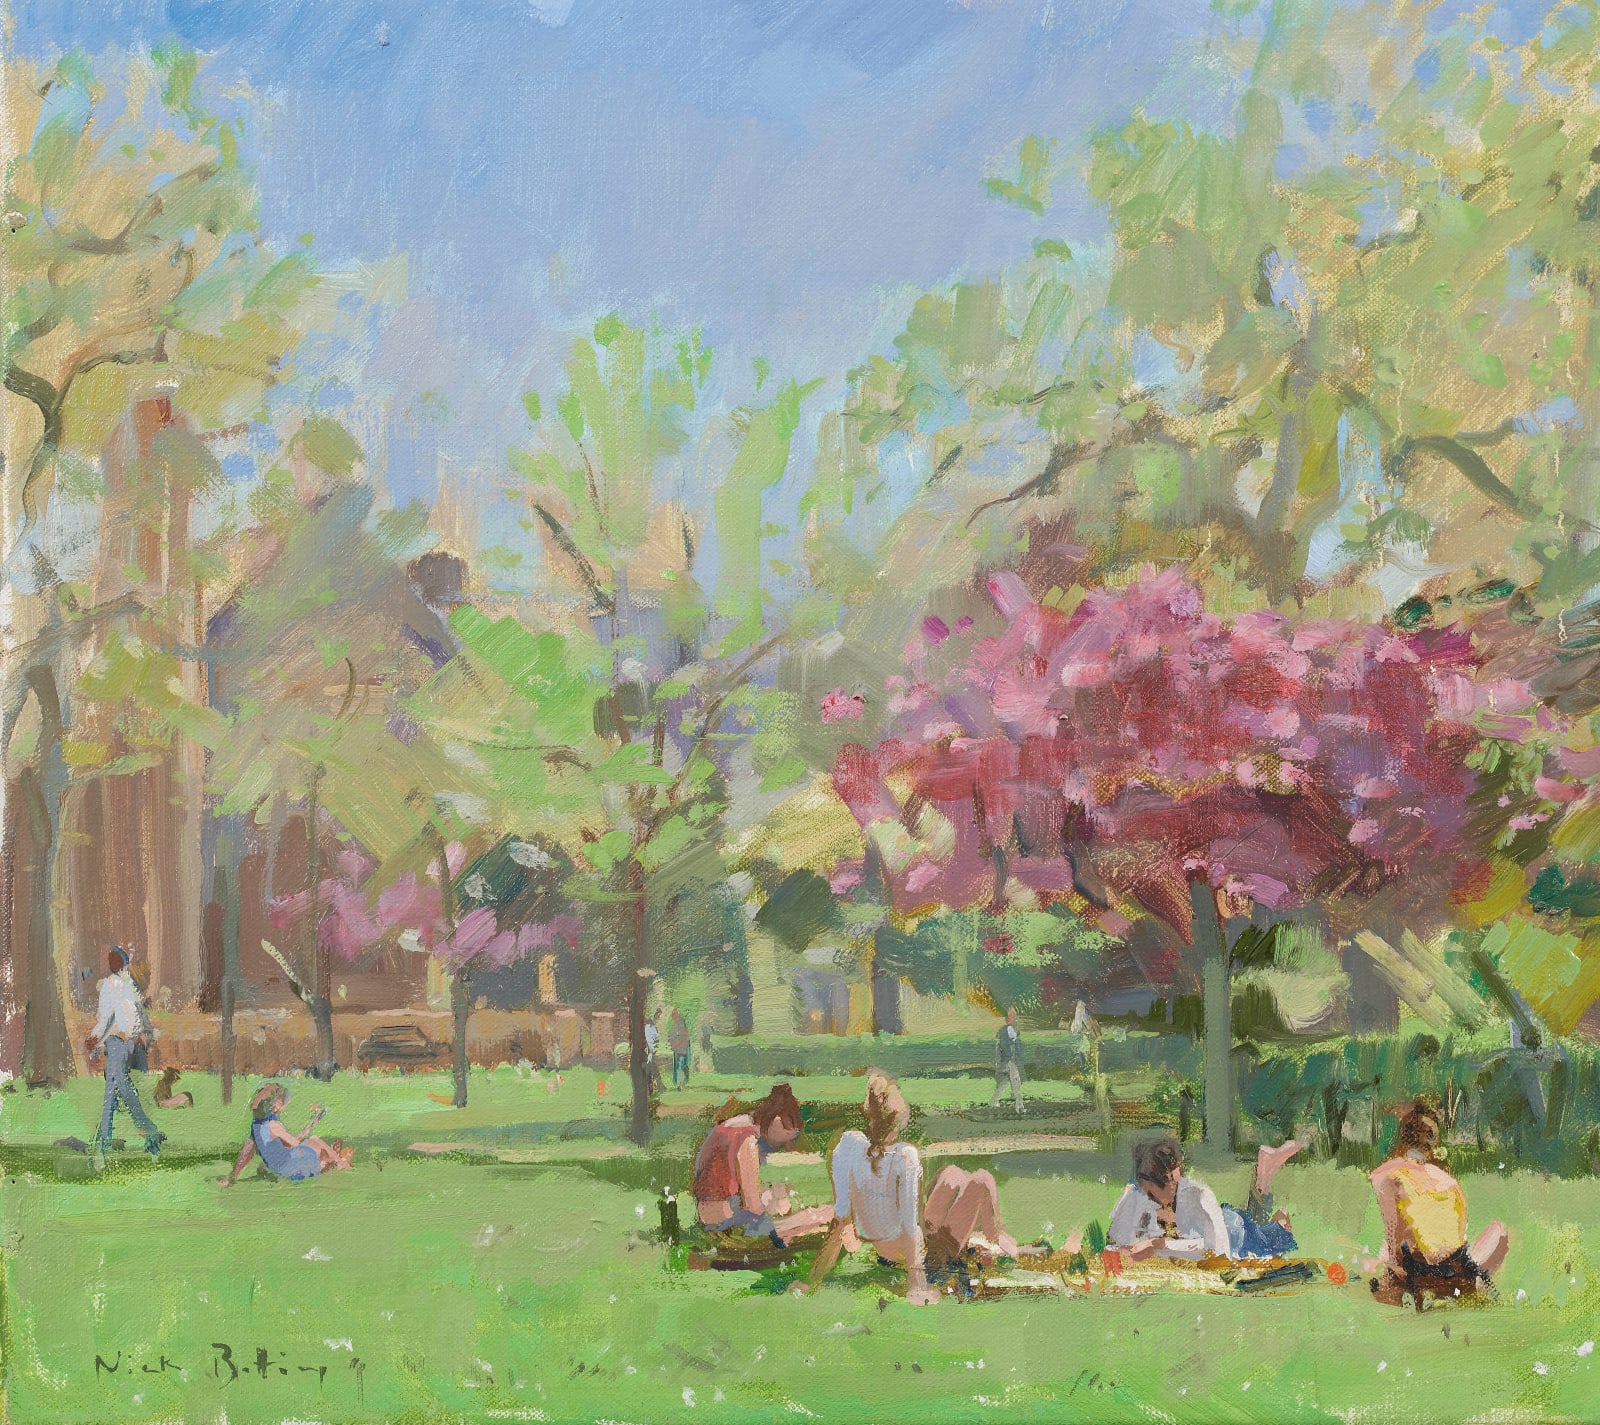 Nick Botting, Lincoln's Inn Fields, Hot Spring Day